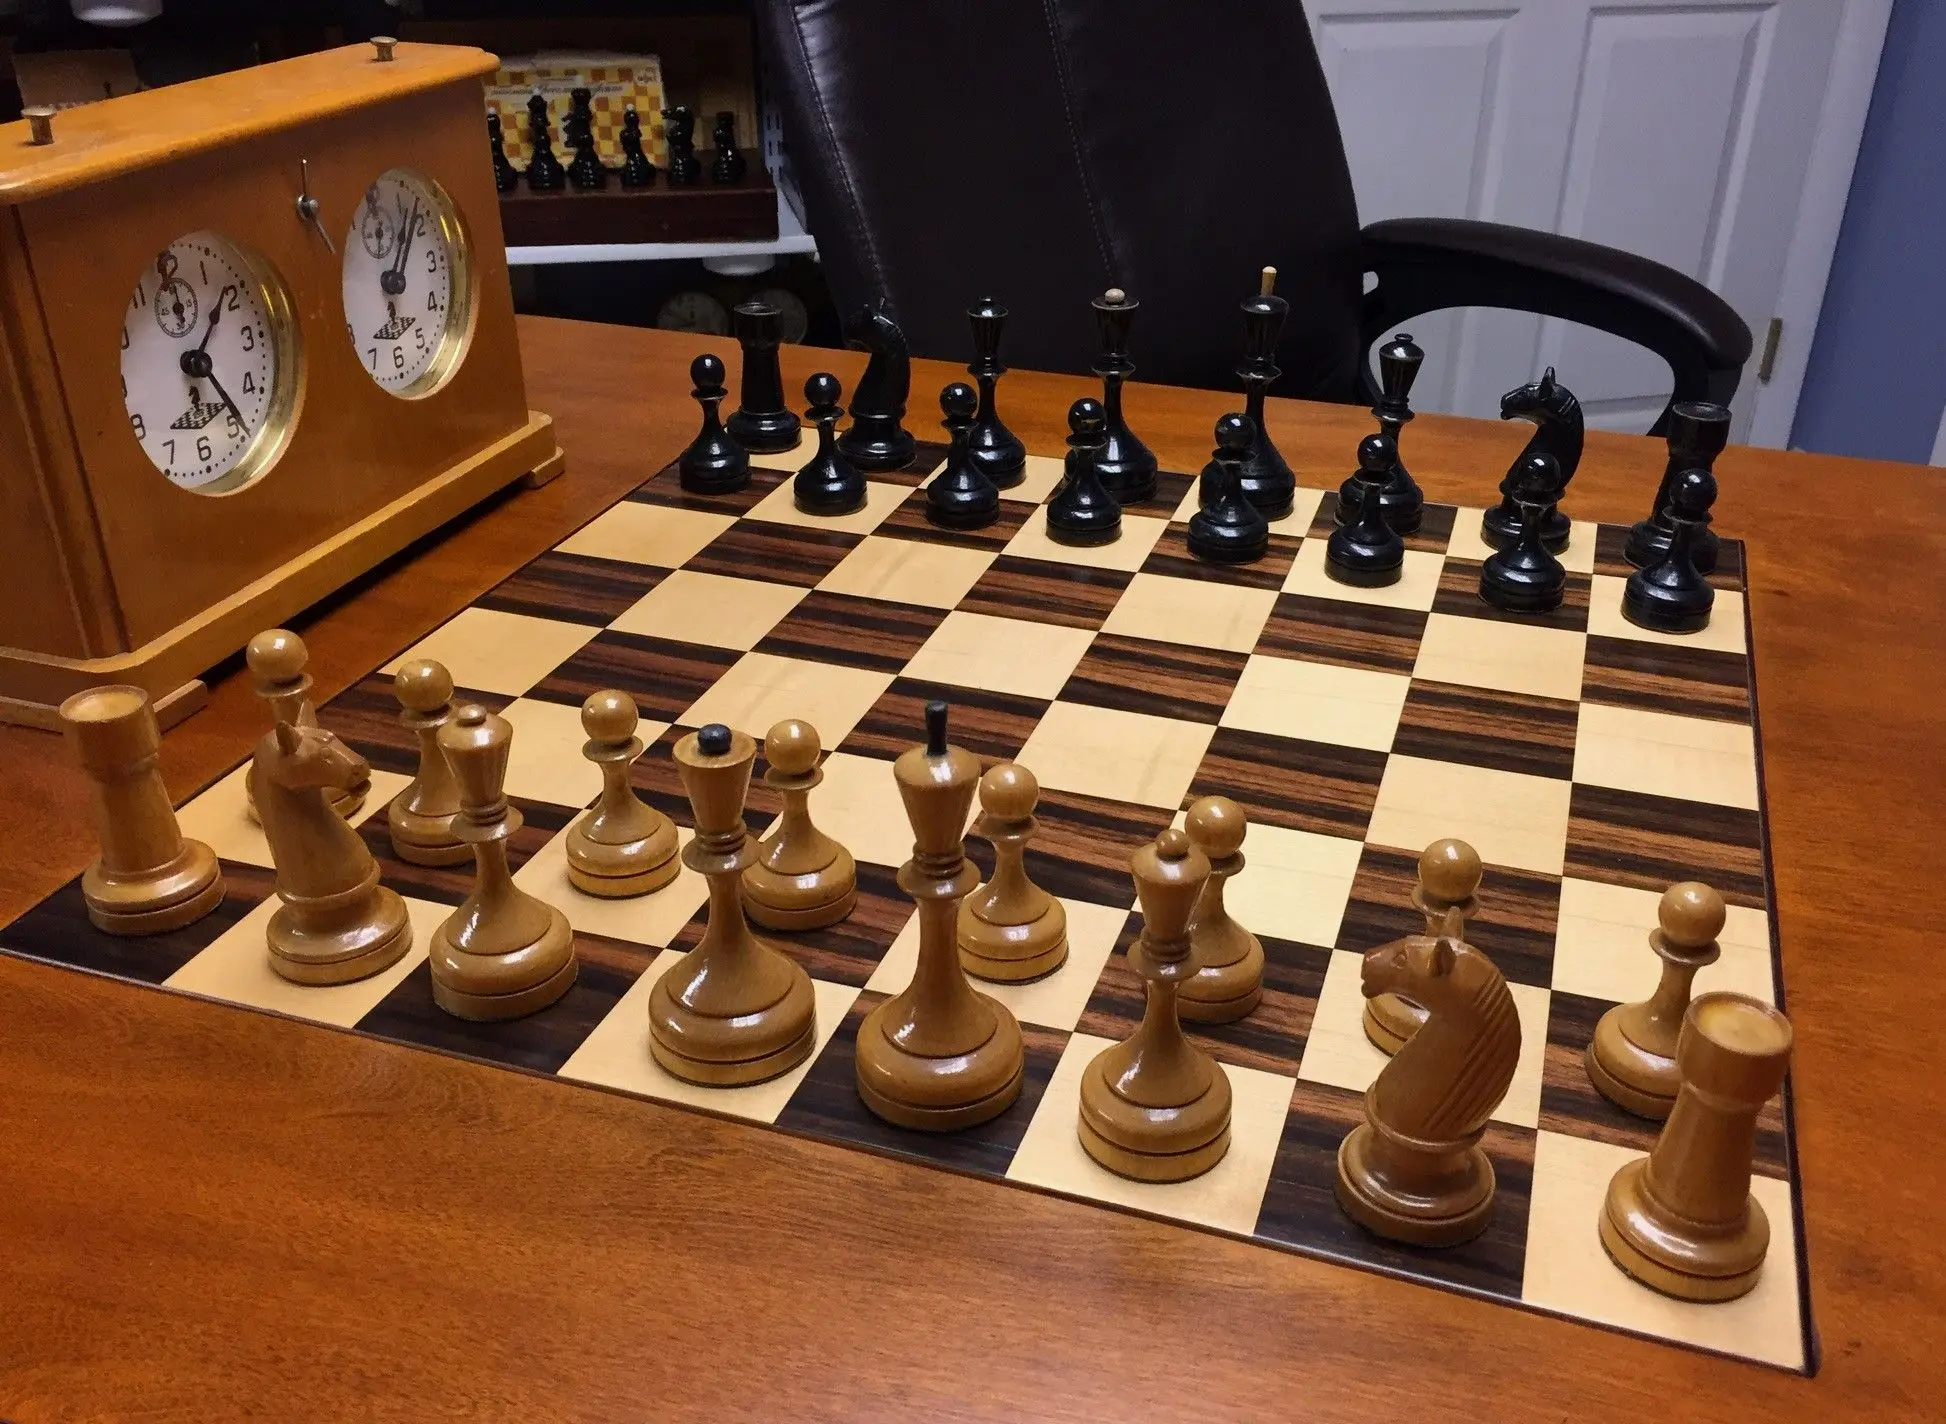 苏联棋子经典棋子Ботвинник-Флор II （Botvinnik-Flohr II）， 塔尔爱用的棋。名字来自鲍特威尼克和弗洛西的苏联冠军赛。以此两人命名的有两套，1933年套称为 I ，1935年套称为 II。33年套更接近西方设计。